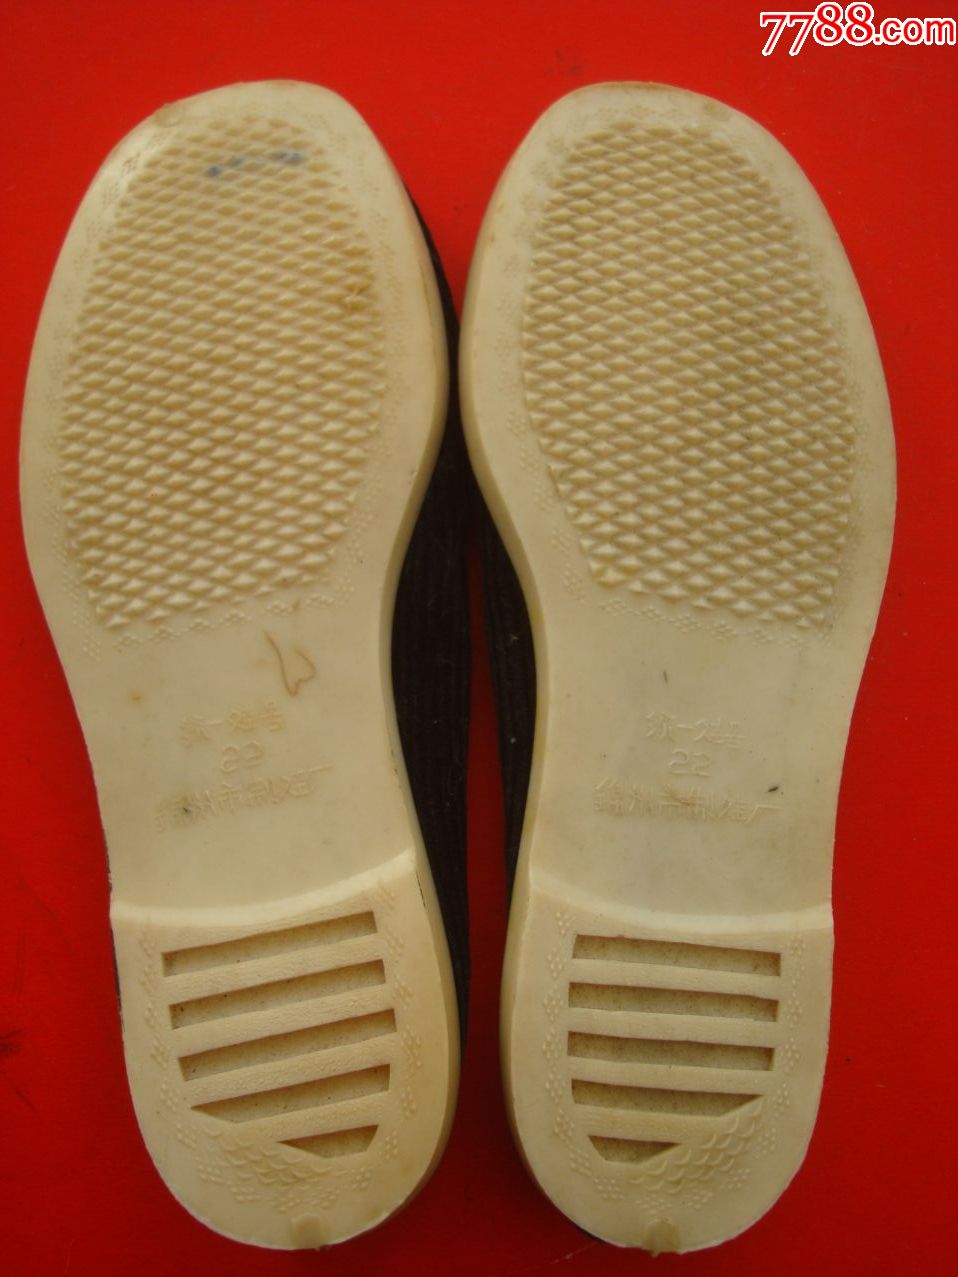 【34码】白塑料底黑条绒布鞋【全新,软底-男女/鞋靴-7788收藏